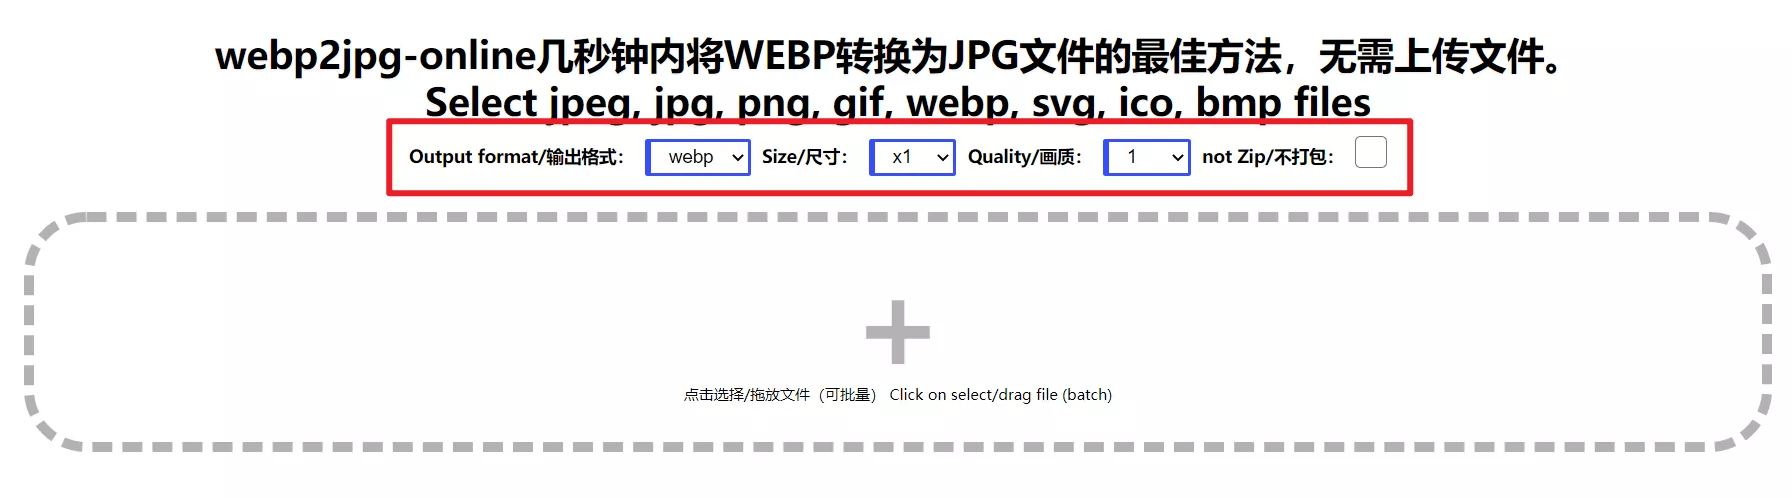 webp2jpg-online